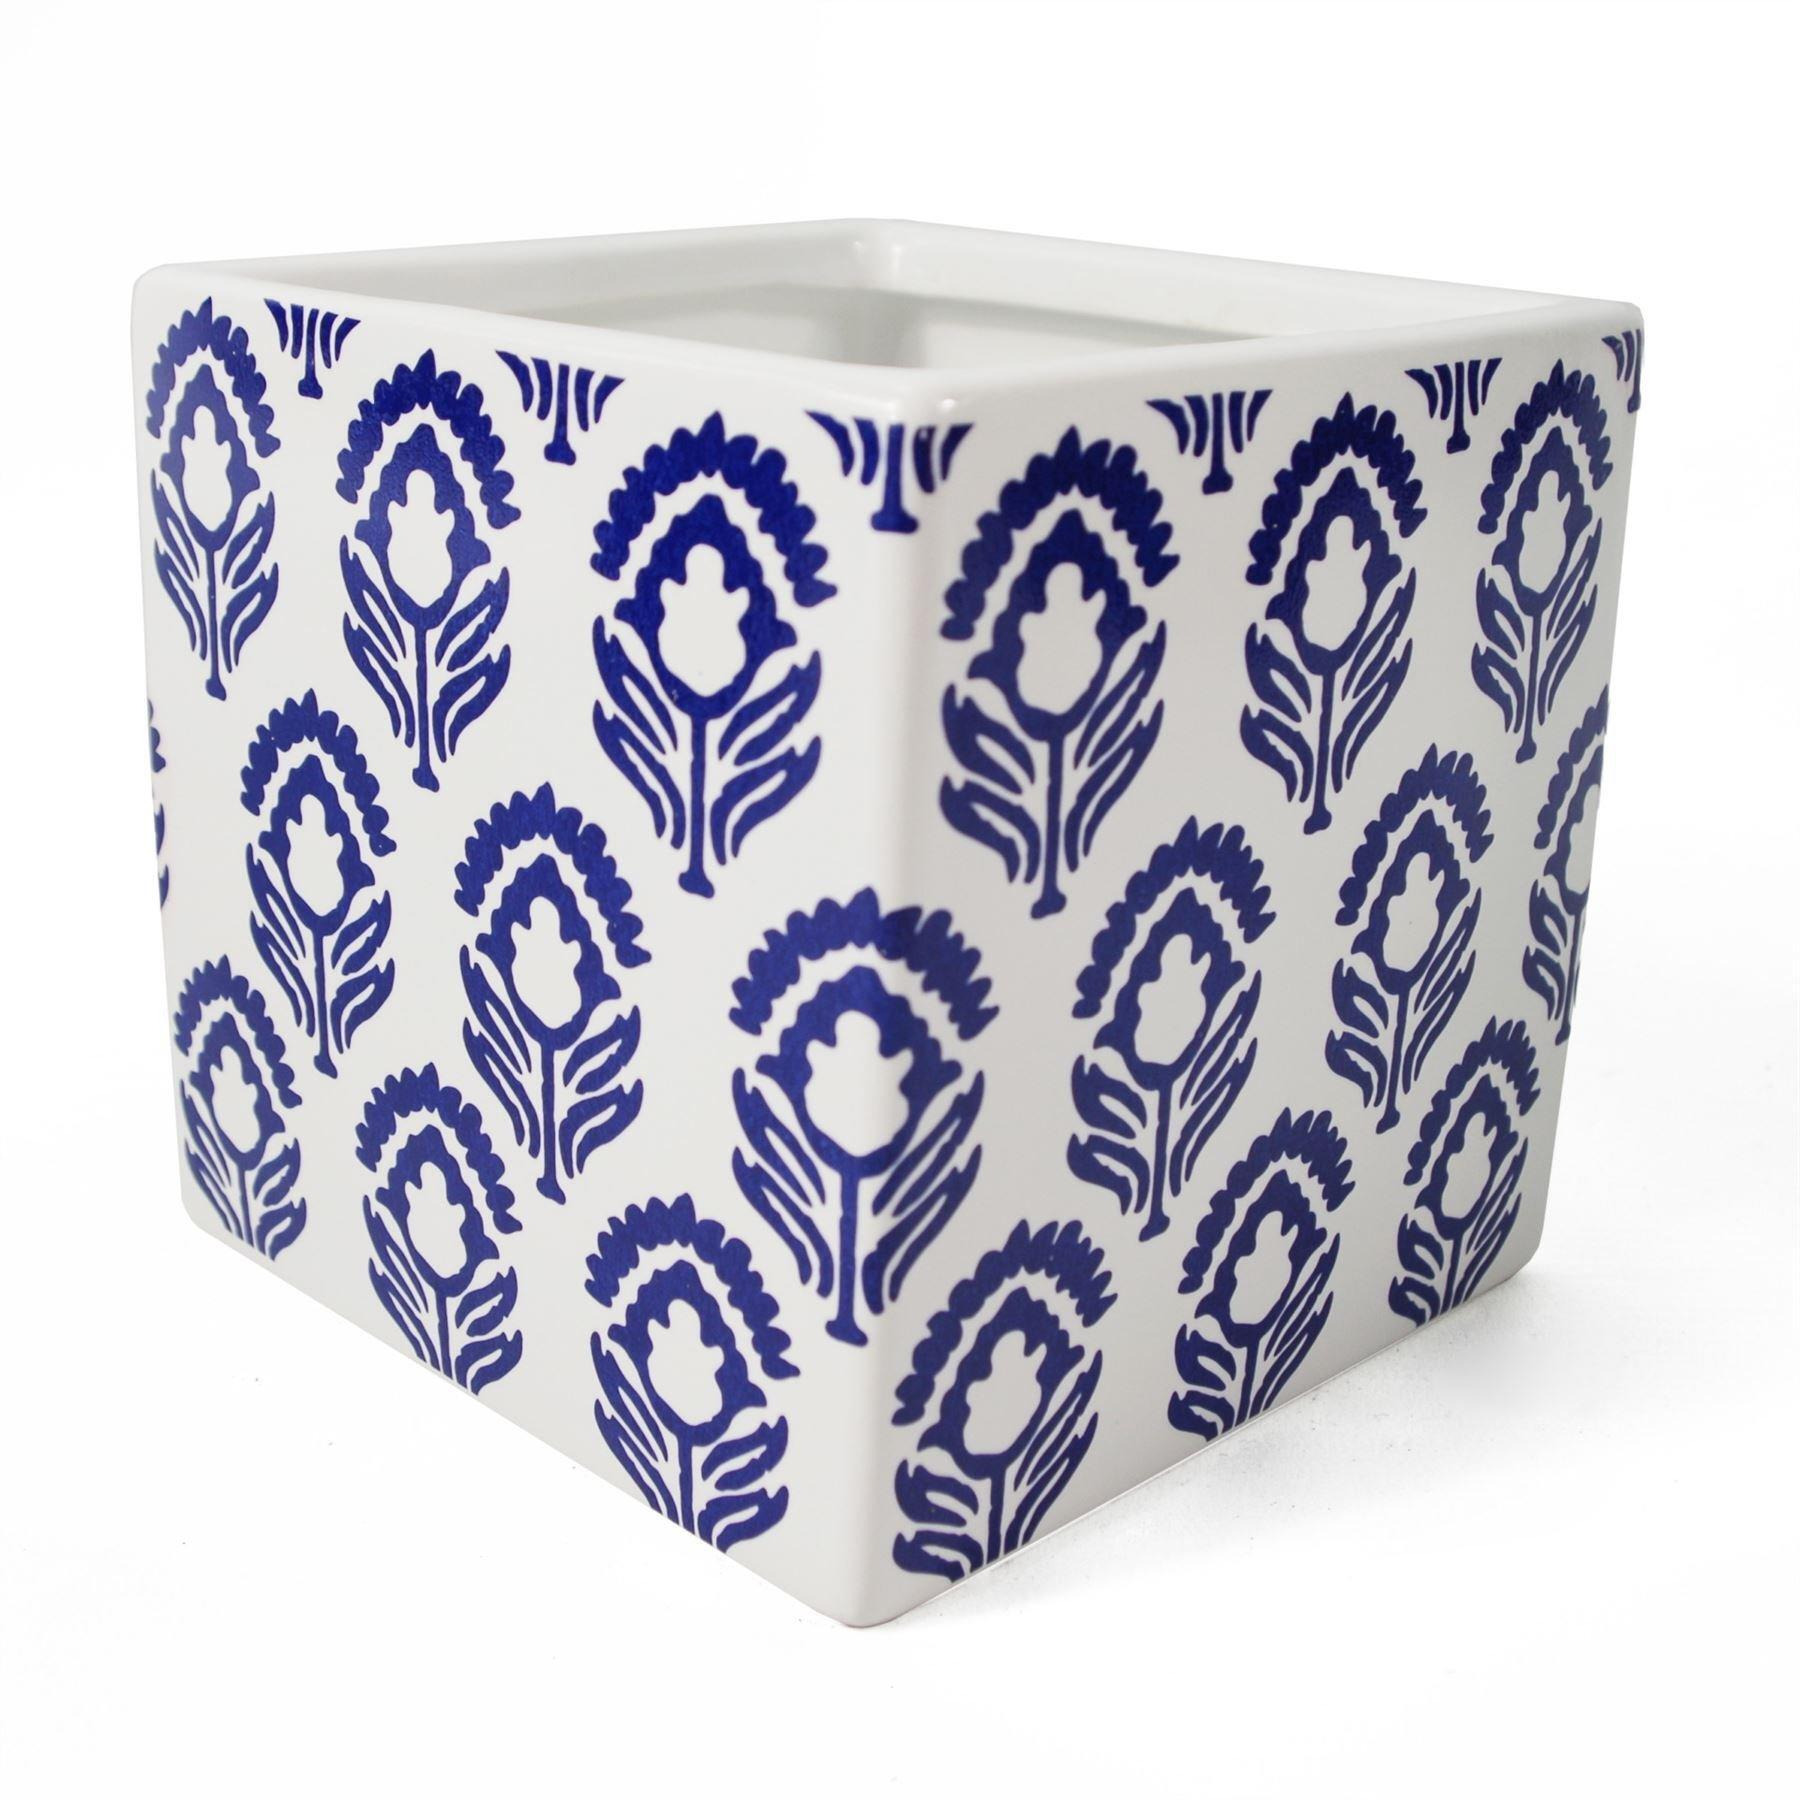 12cm Ceramic Cube Planter with Decorative Print Blue Tulip - image 1